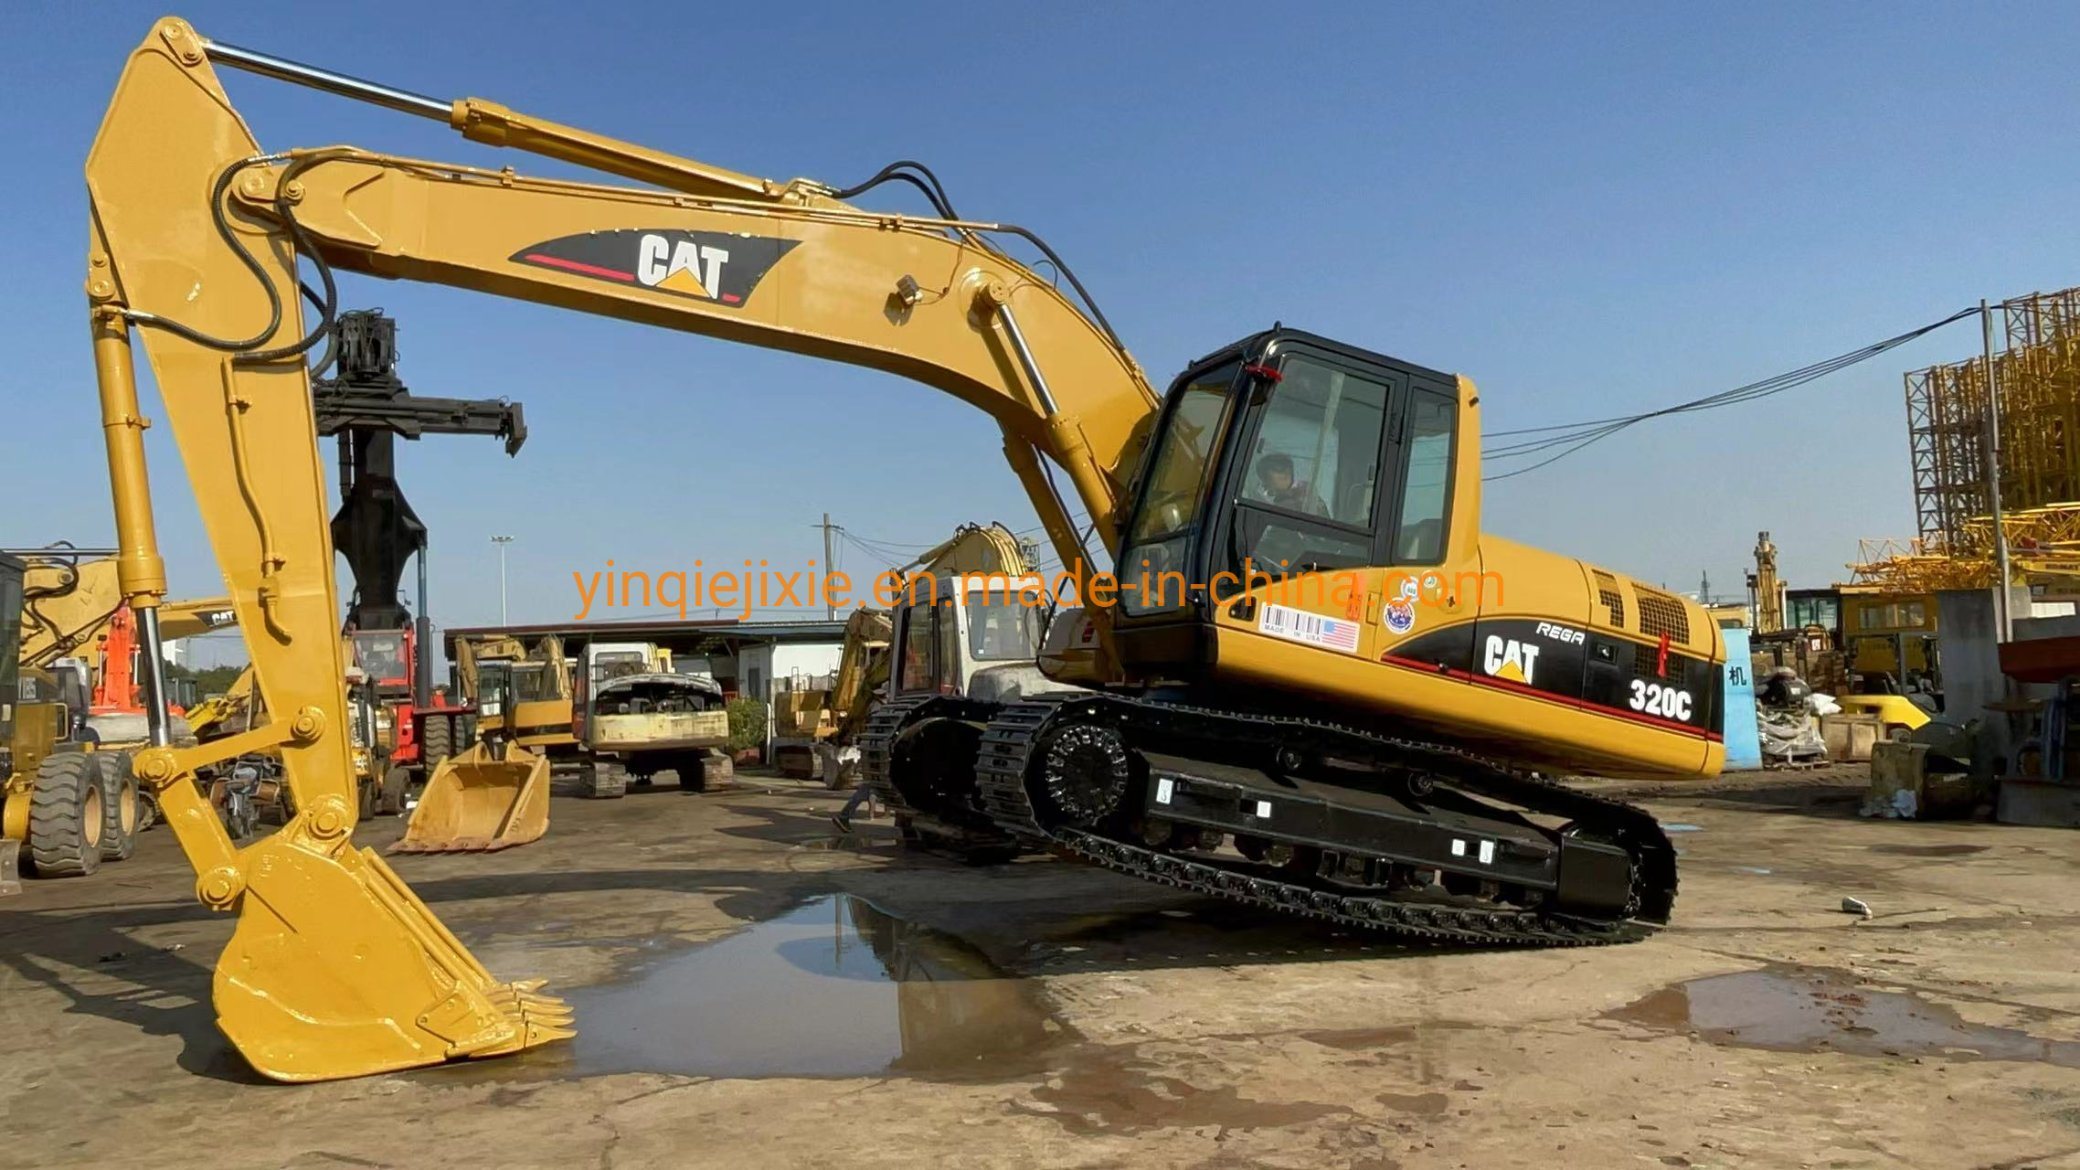 Original Caterpillar Used Excavator Cat 320c Used Cat 320c Excavator Cat Machinery Excavator Cat 320